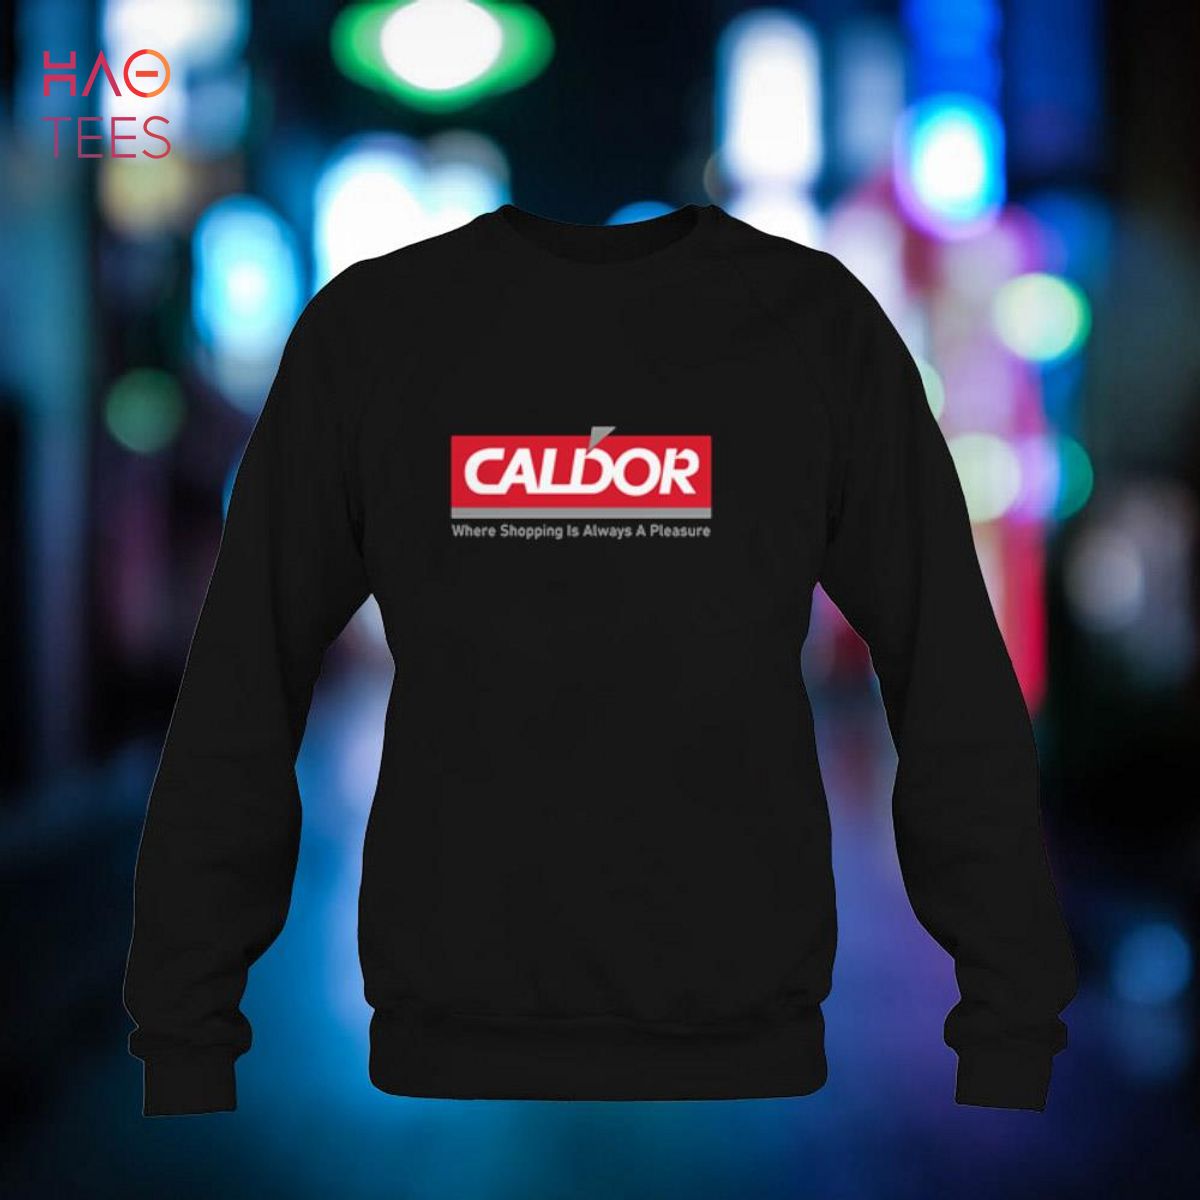 CALDOR - Where Shopping Is Always A Pleasure Shirt